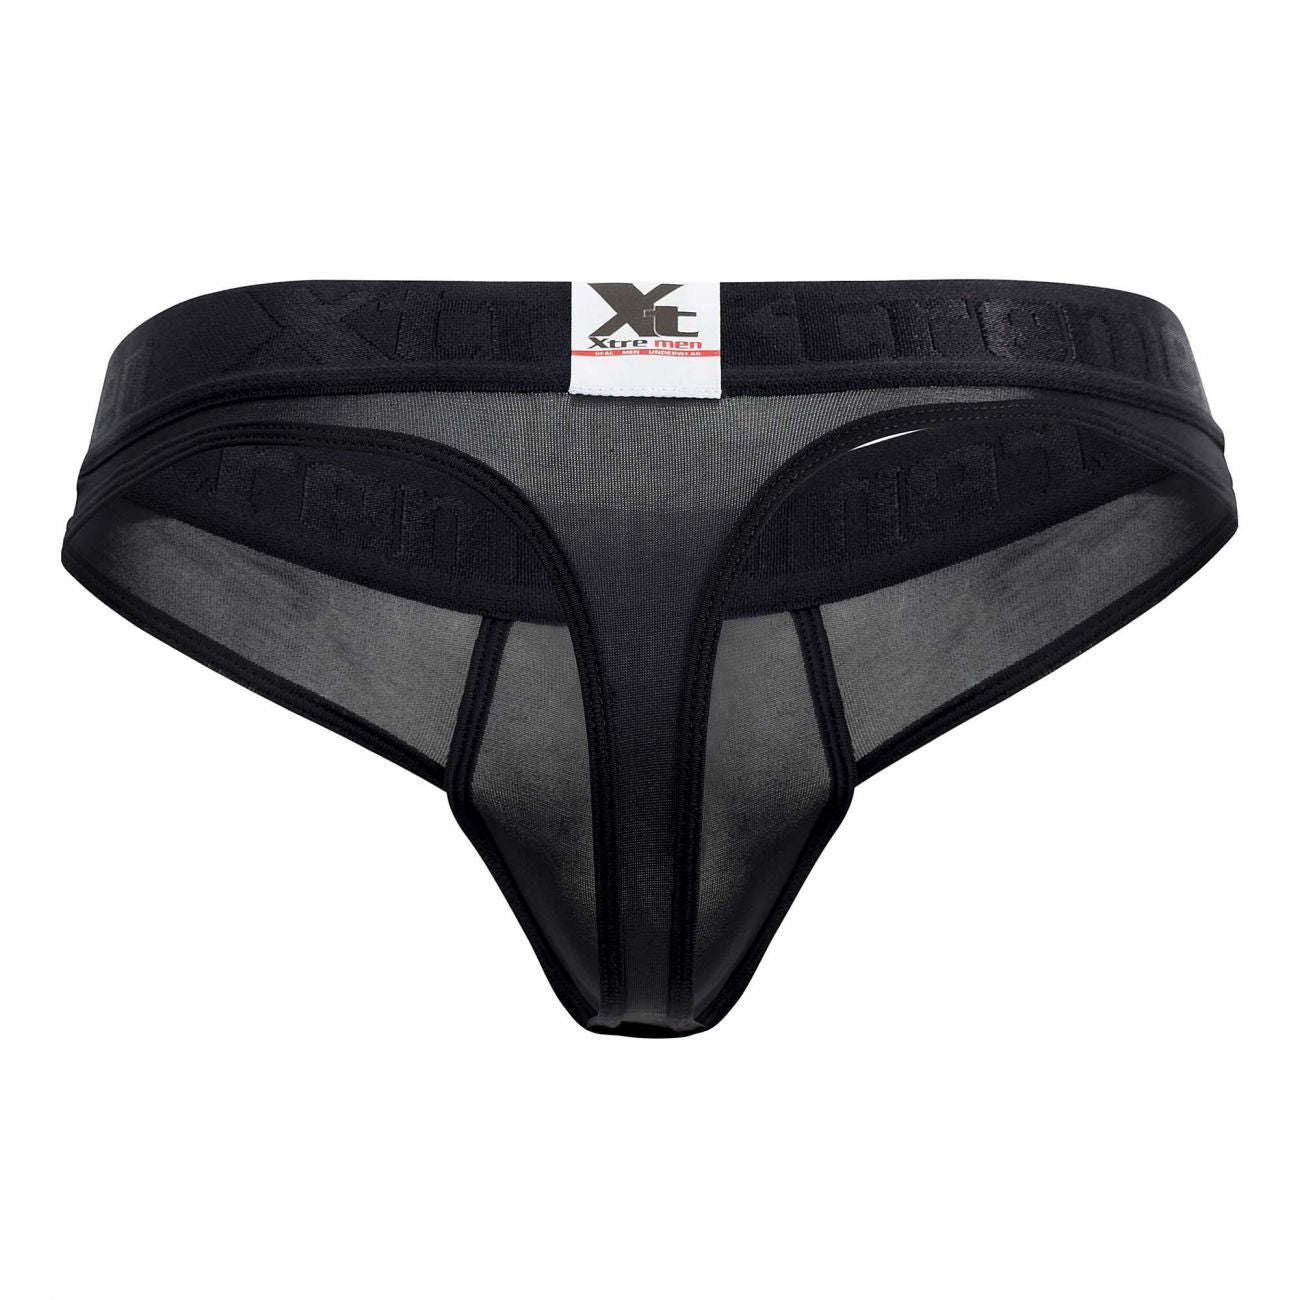 Xtremen 91031-3 3PK Piping Thongs Black White Gray - Size XL